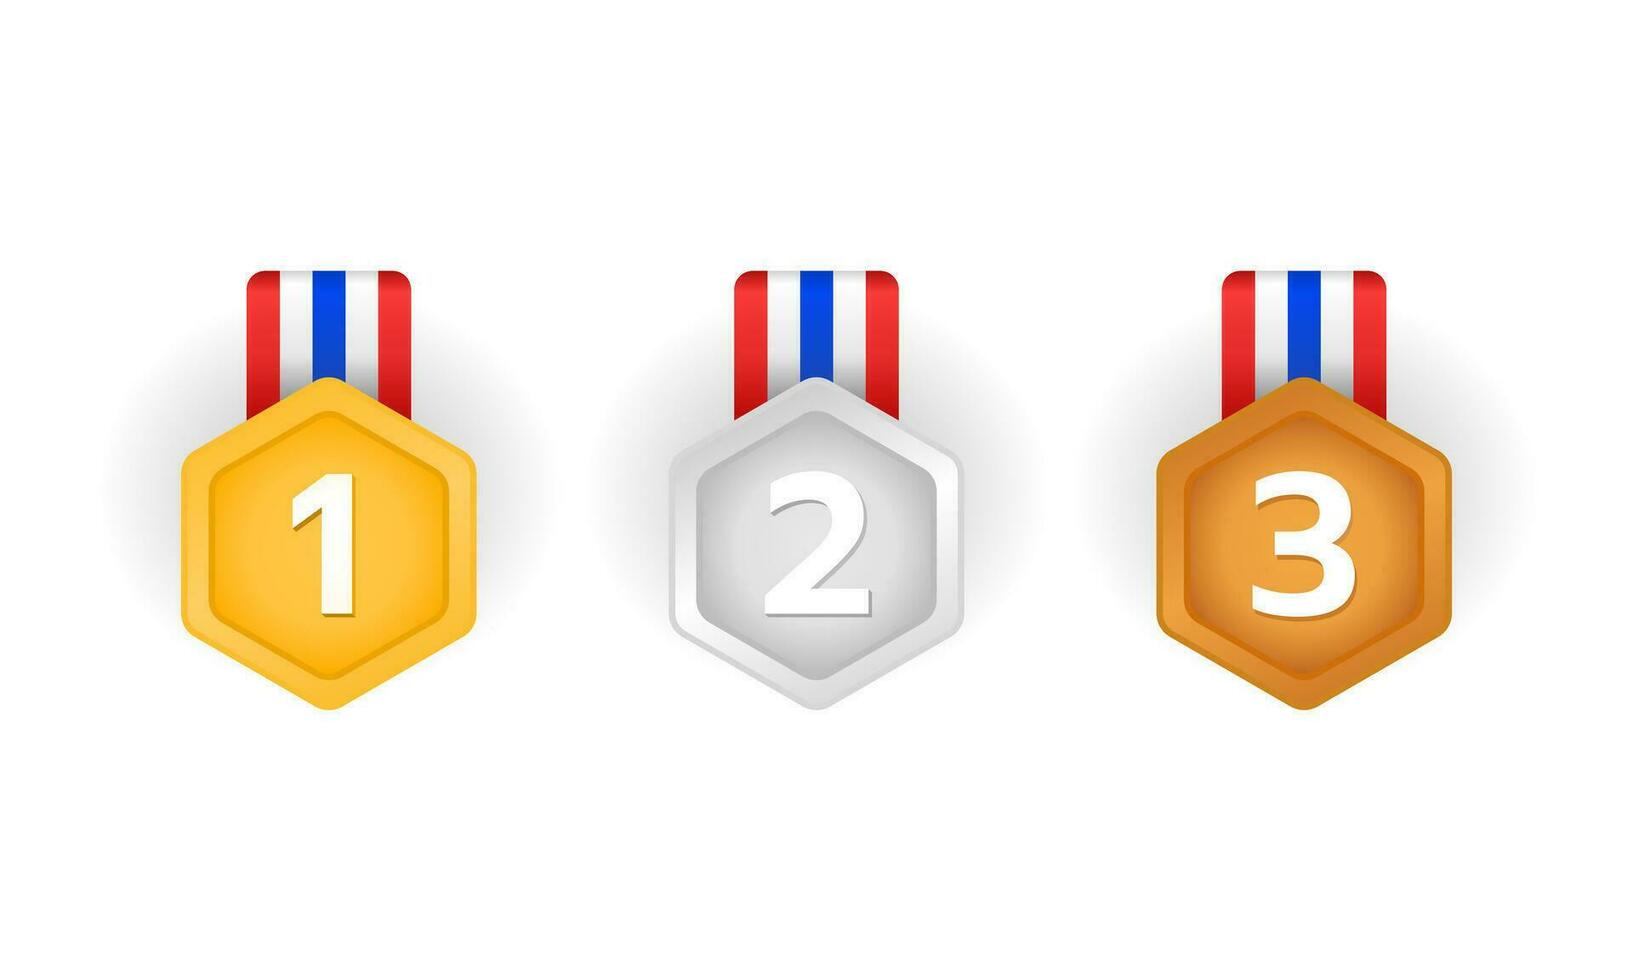 kampioenen beloning goud, zilver, en bronzen medailles. winnaar medaille reeks met lintje. vector illustratie.